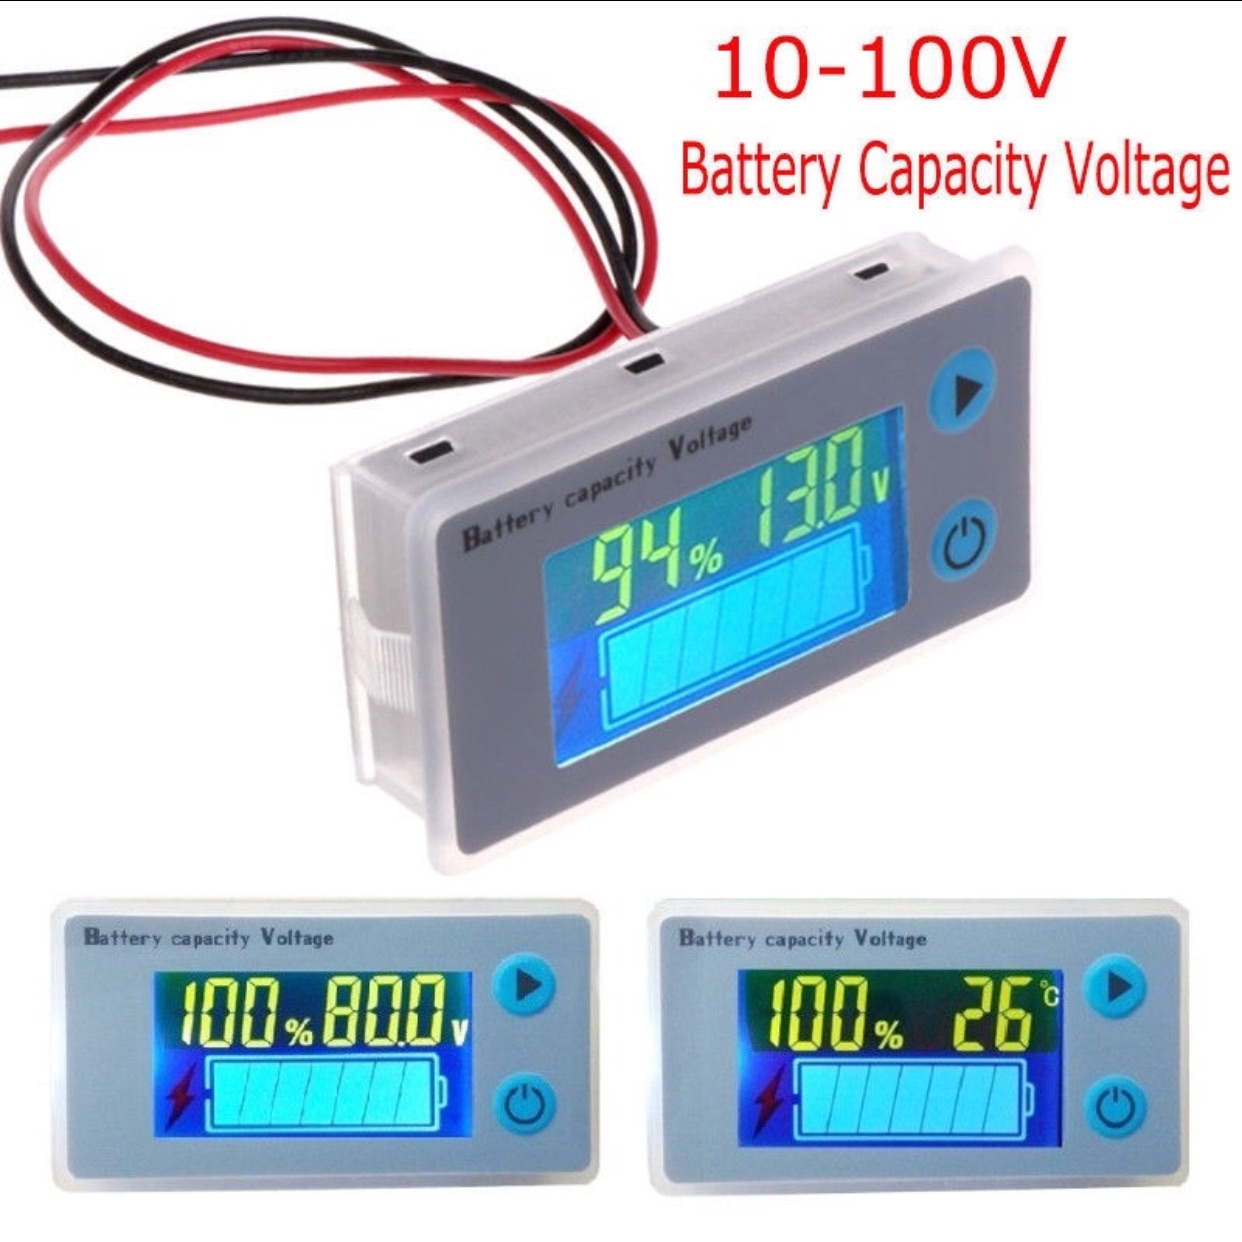 วัดโวลท์ วัดเเบทเตอร์รี่ 0-100v อุปกรณ์วัดแรงดันไฟฟ้า ความจุแบตเตอรี่รถยนต์ 10-100V หน้าจอ LCD